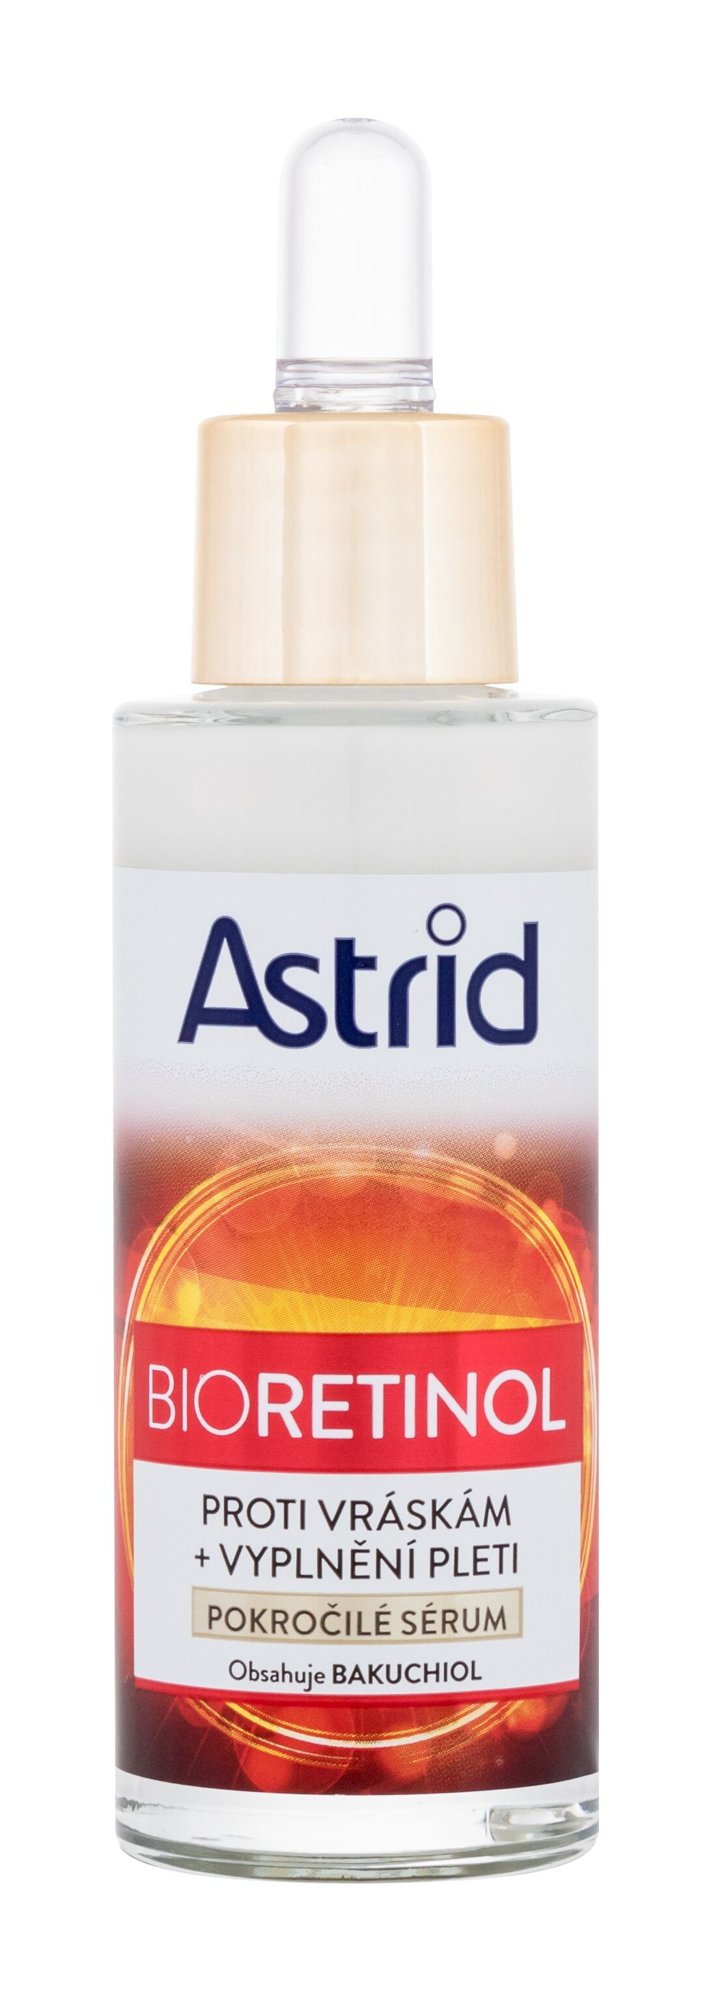 Astrid Bioretinol Serum Veido serumas